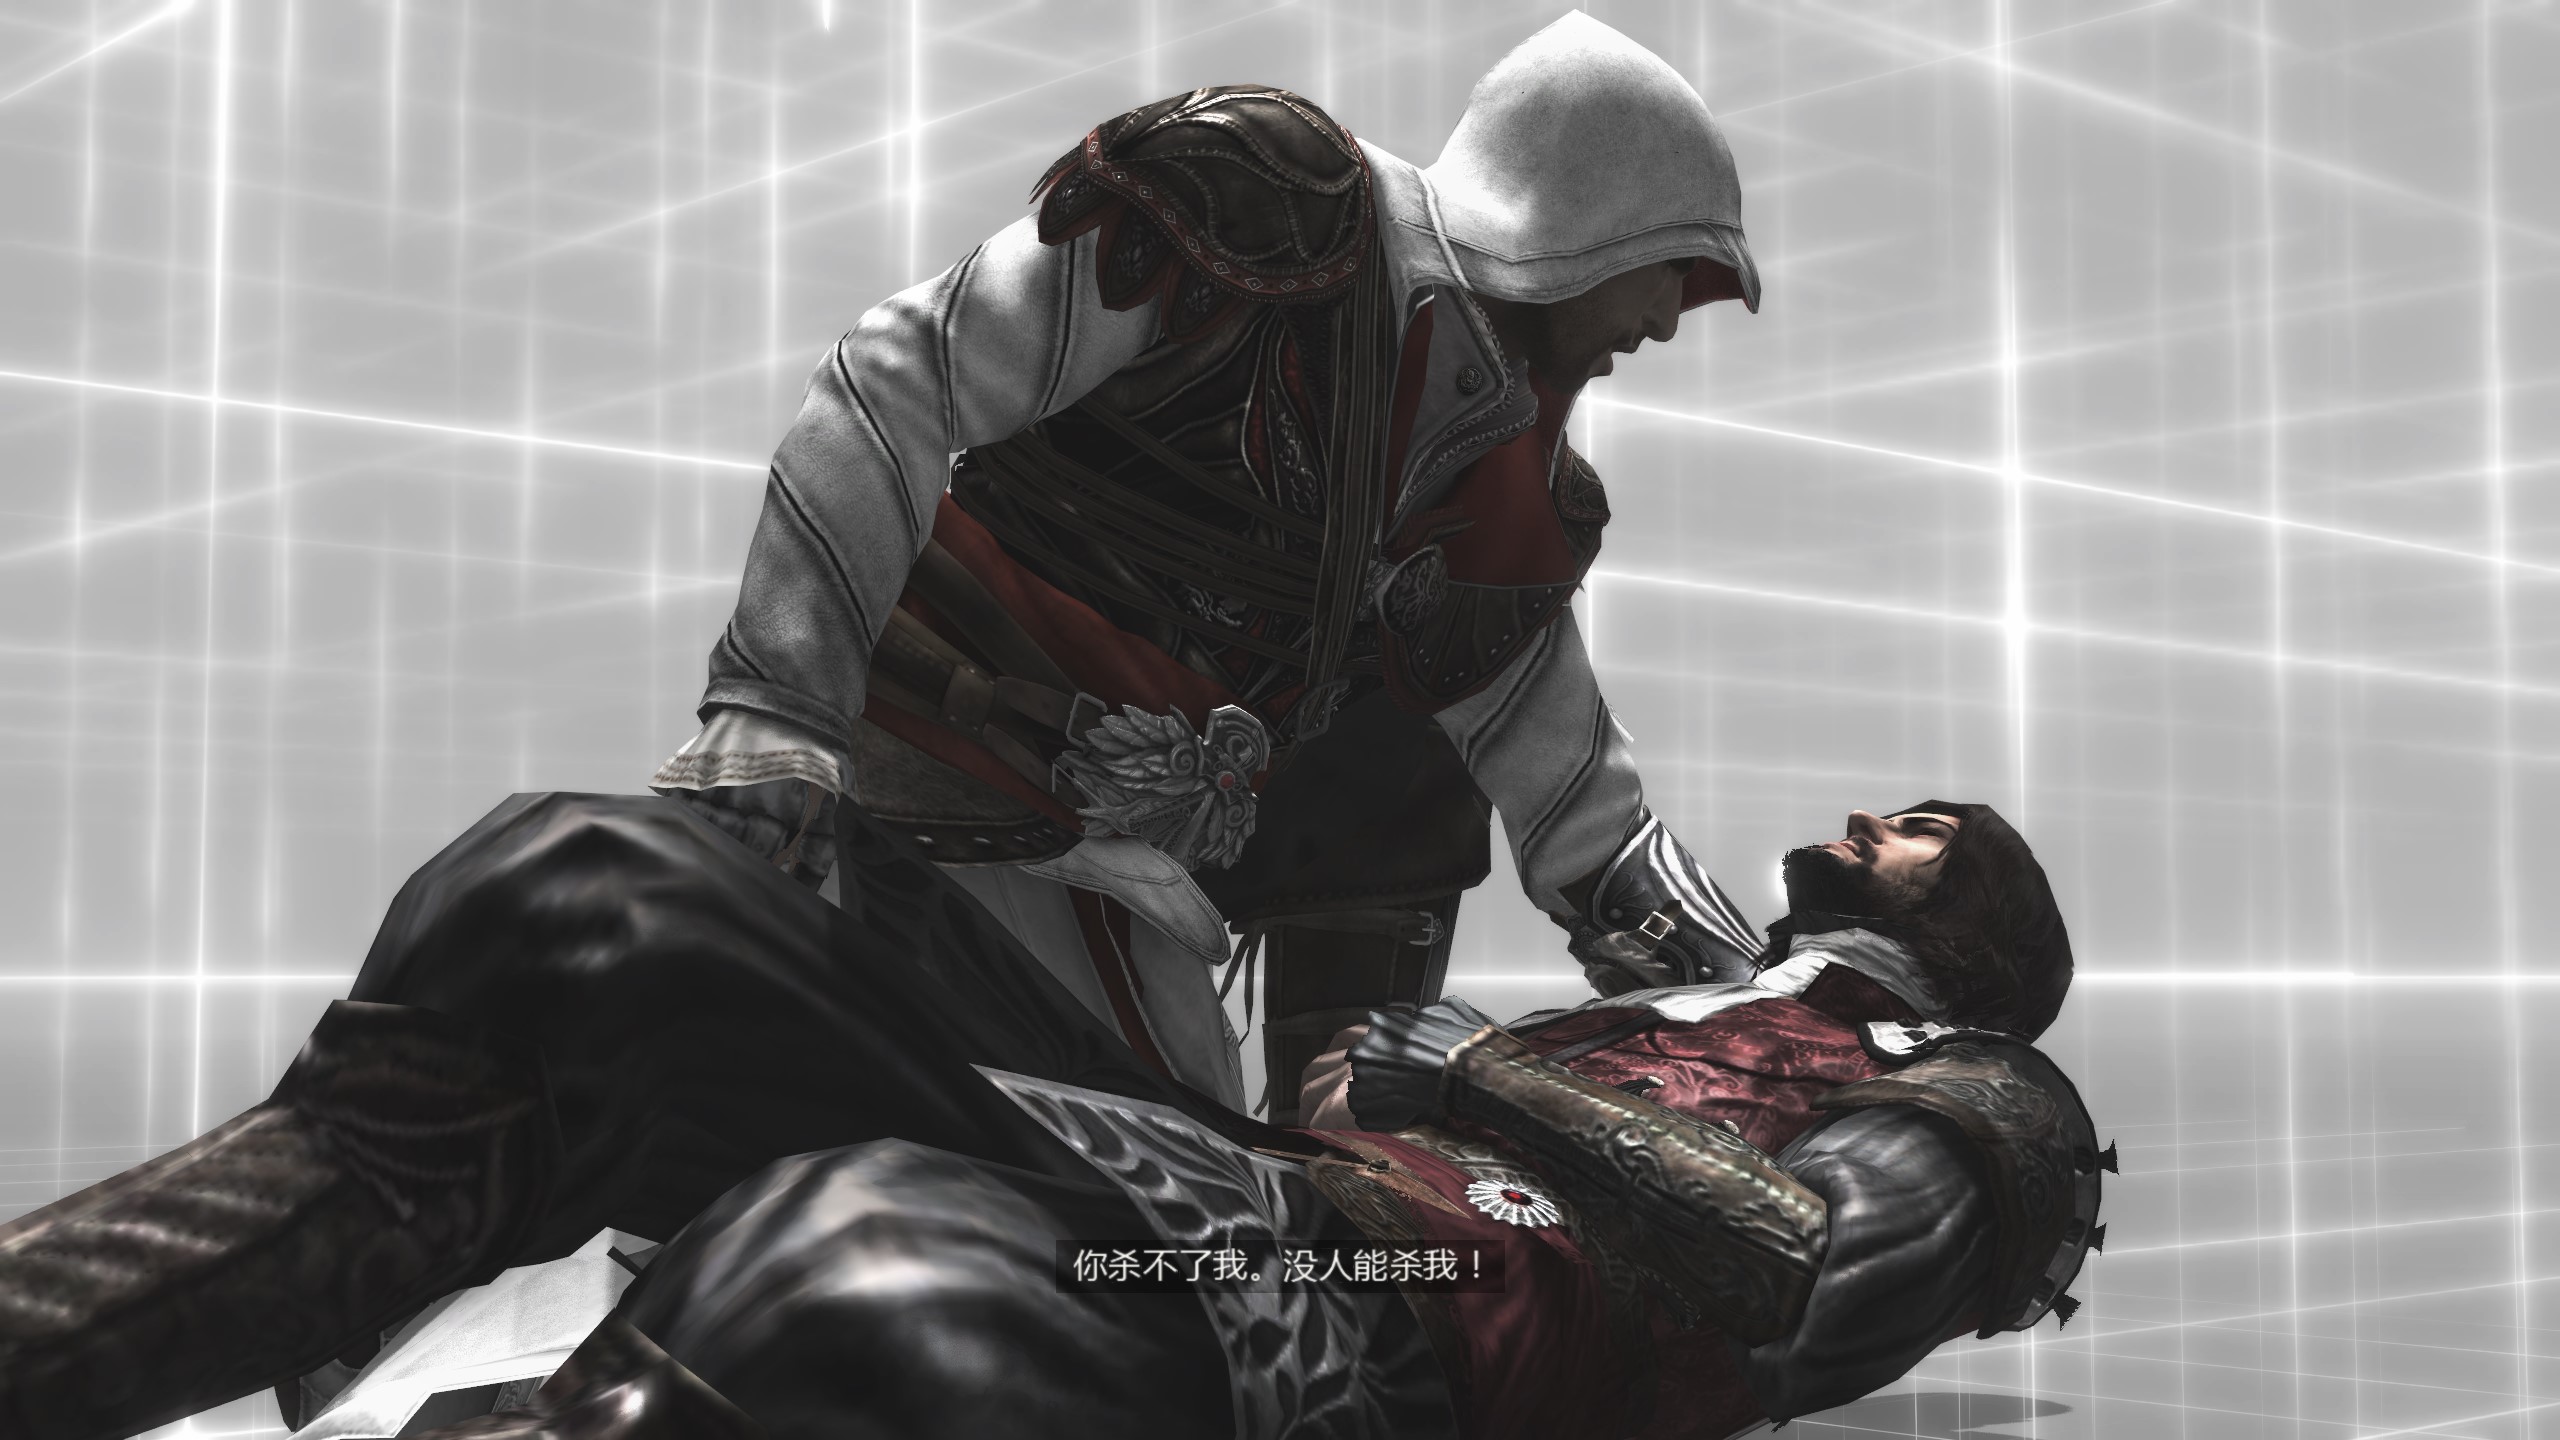 刺客信条 兄弟会 Assassins Creed Brotherhood